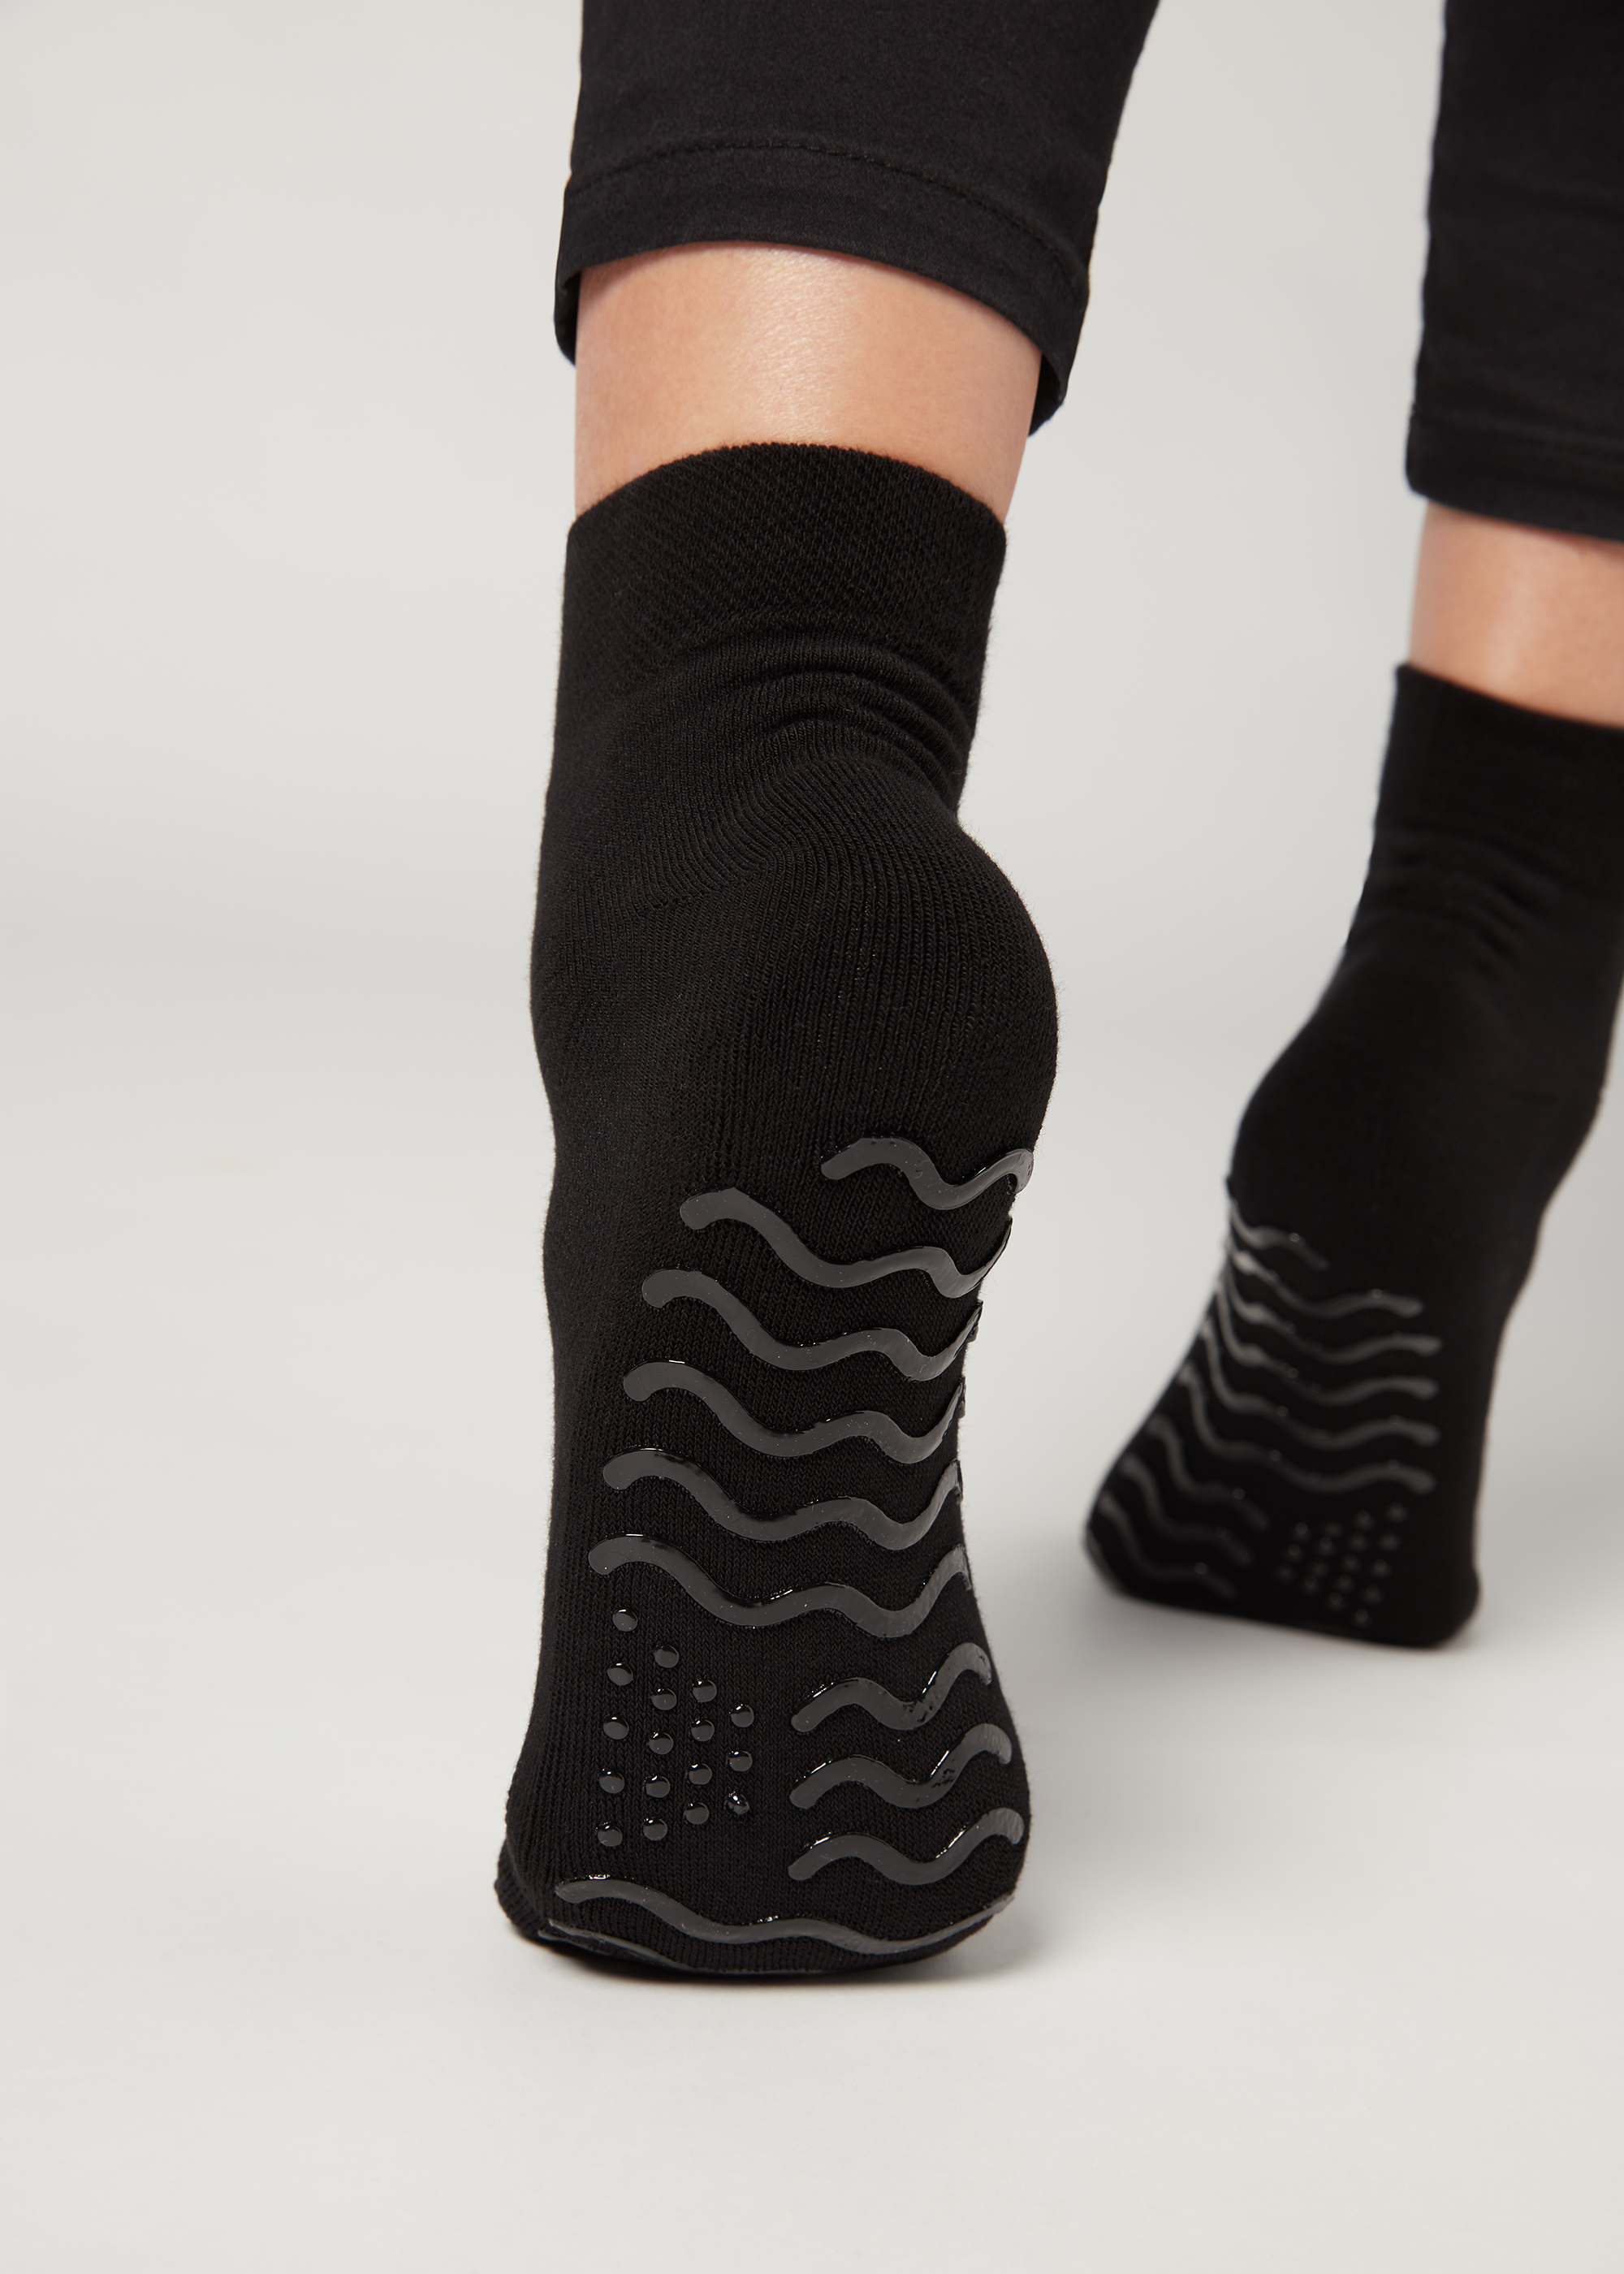 New Style 4 Pairs Socks For Women Pilates Socks Non Slip Grip